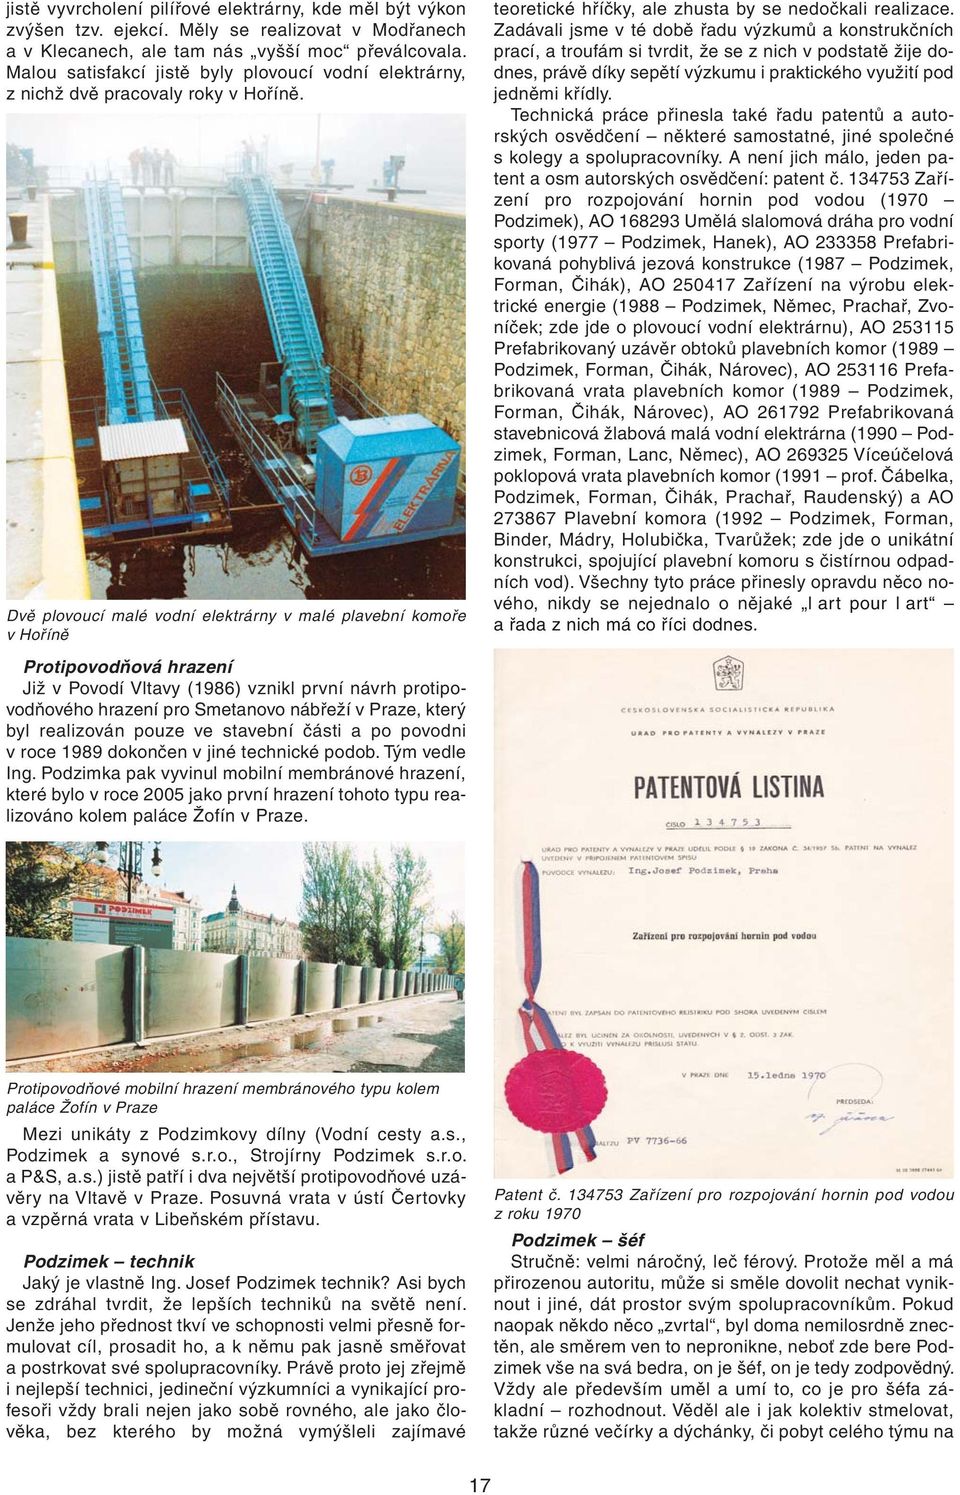 Dvě plovoucí malé vodní elektrárny v malé plavební komoře v Hoříně Protipovodňová hrazení Již v Povodí Vltavy (1986) vznikl první návrh protipovodňového hrazení pro Smetanovo nábřeží v Praze, který